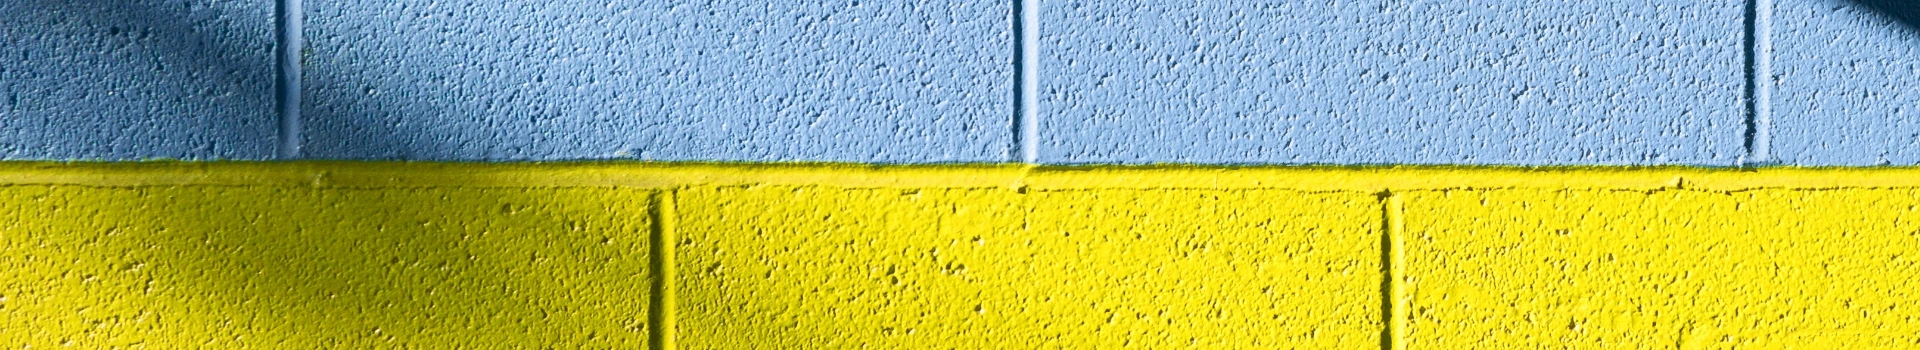 niebiesko-żółty mur